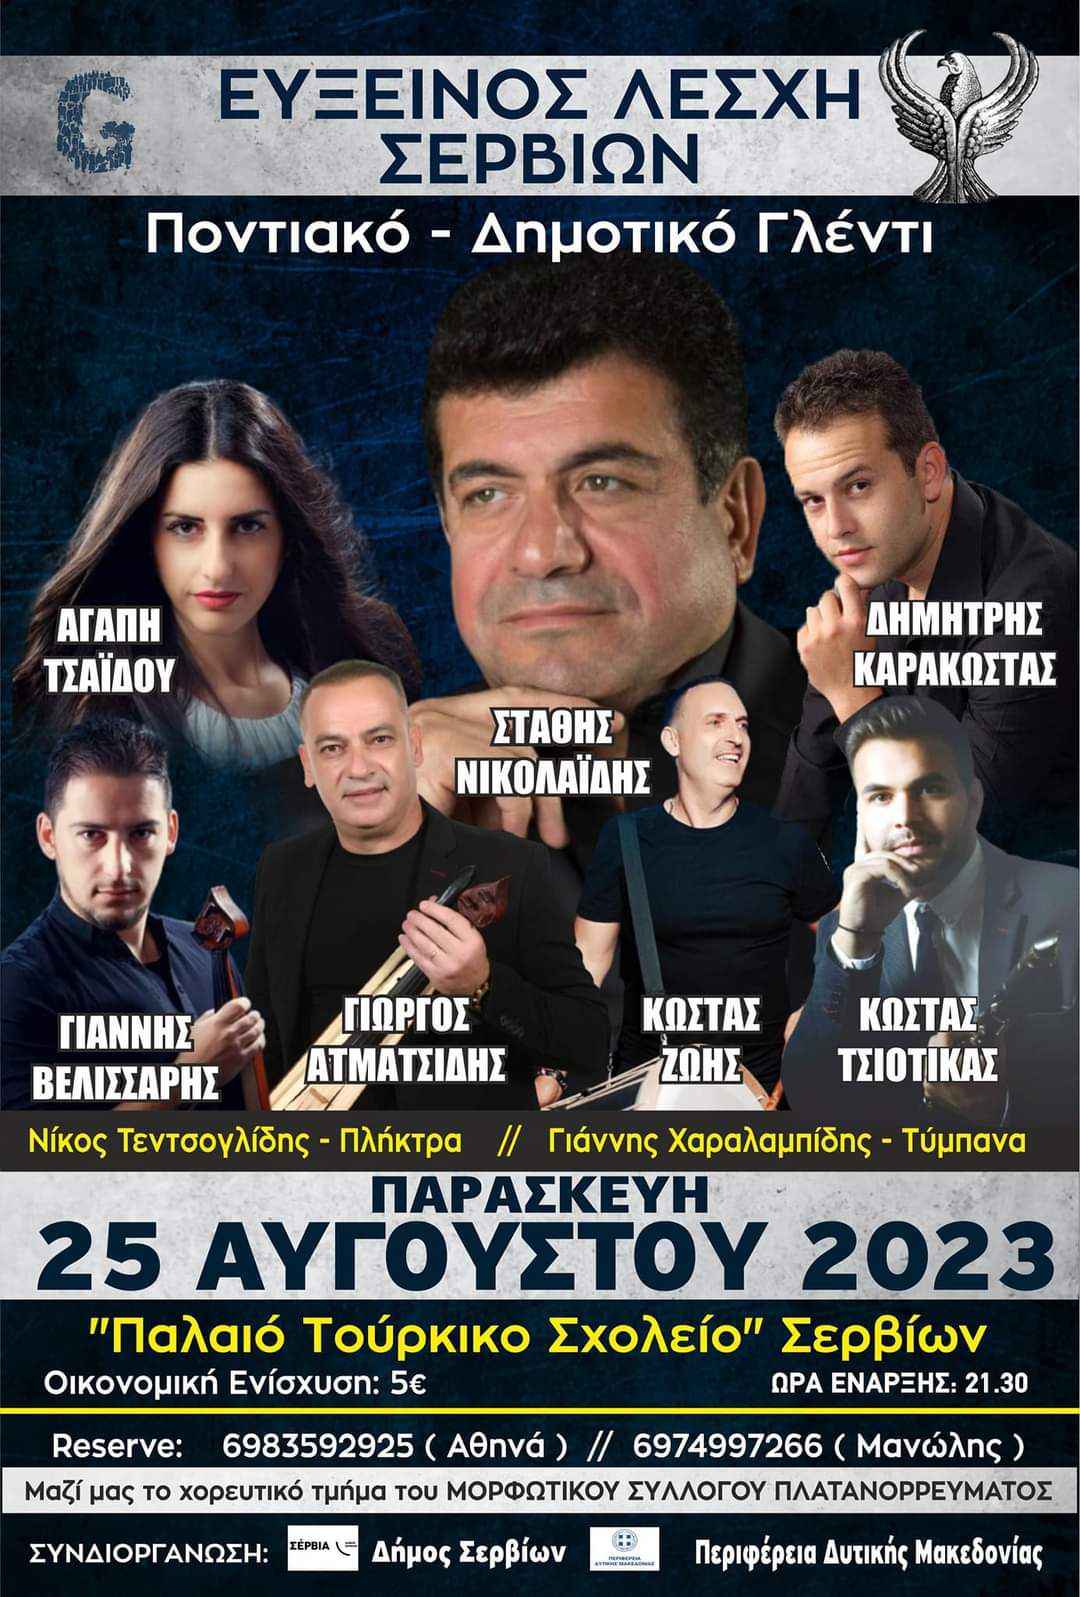 Εύξεινος Λέσχη Σερβίων: Παρασκευή 25 Αυγούστου 2023 Μεγάλη Ποντιακή & Δημοτική βραδιά